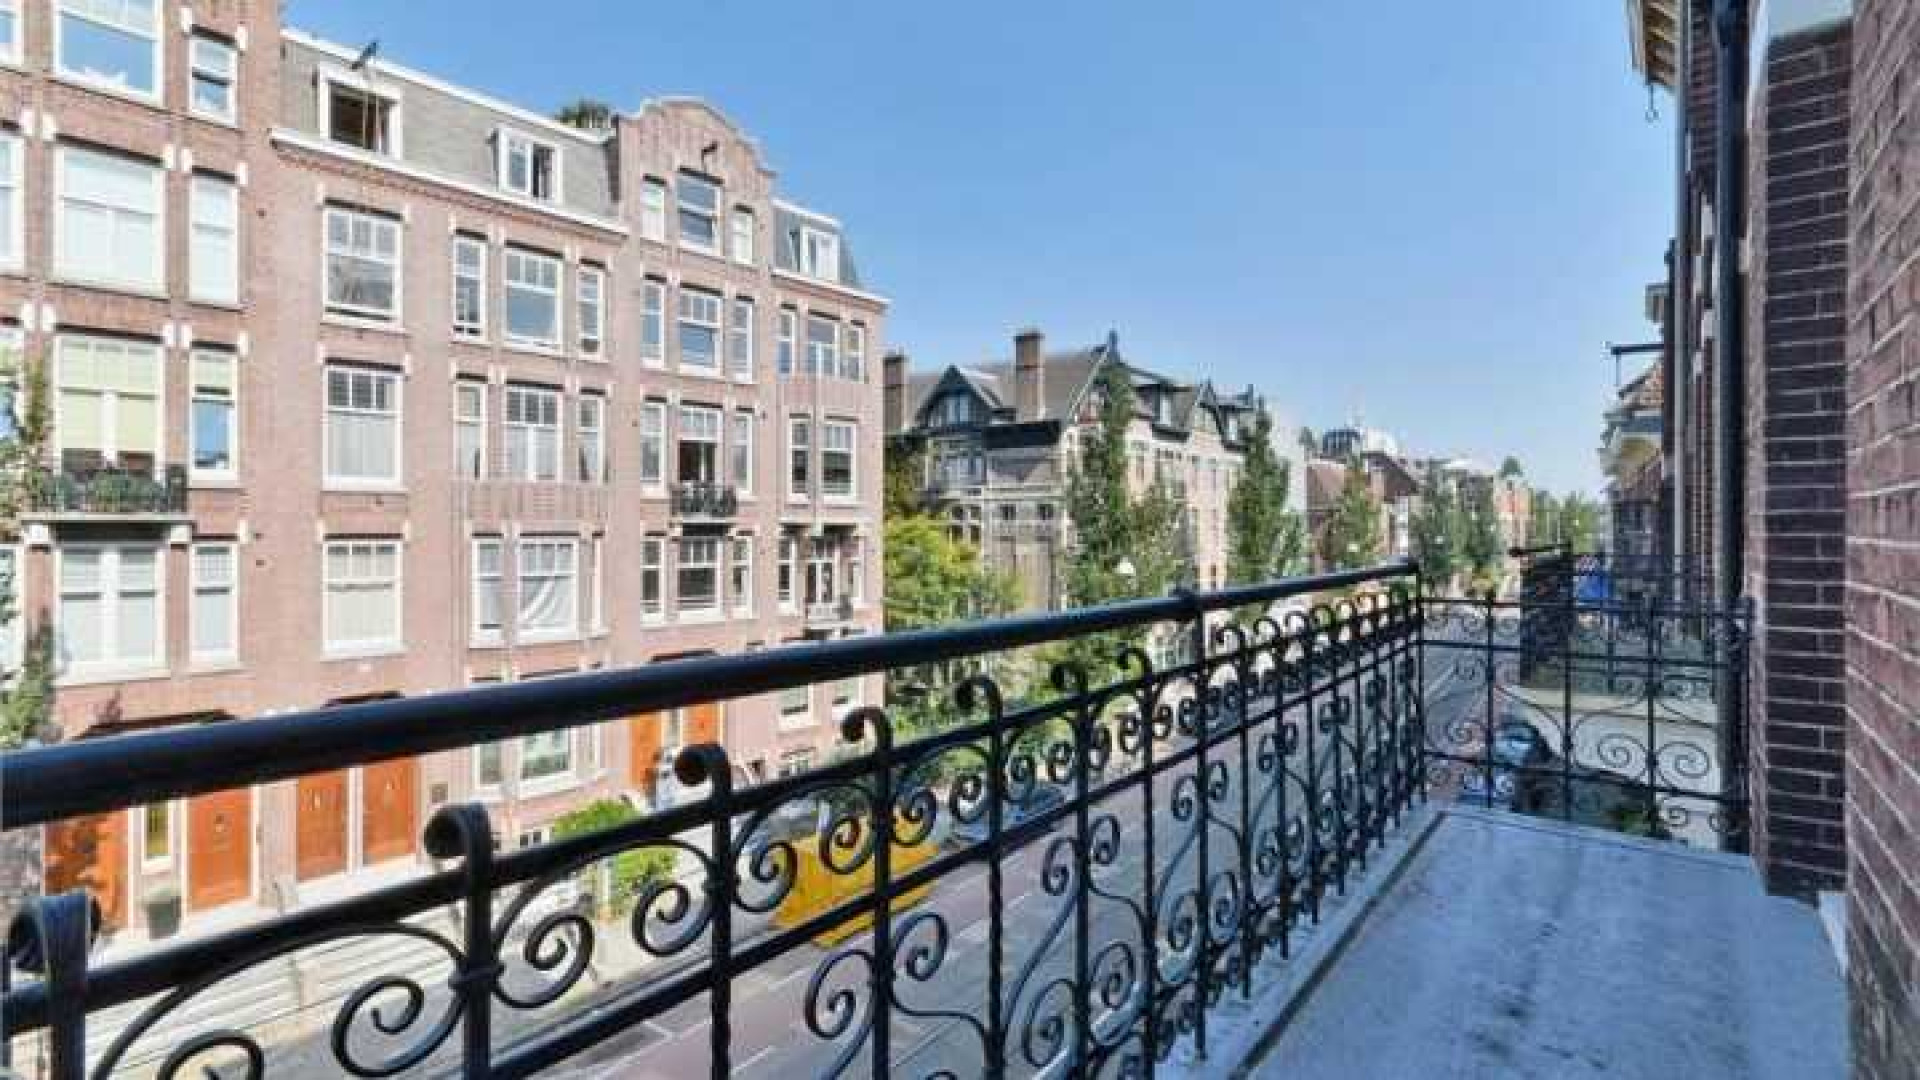 Daan Schuurmans en Bracha verkopen hun huis in Amsterdam Zuid. Zie foto's 19